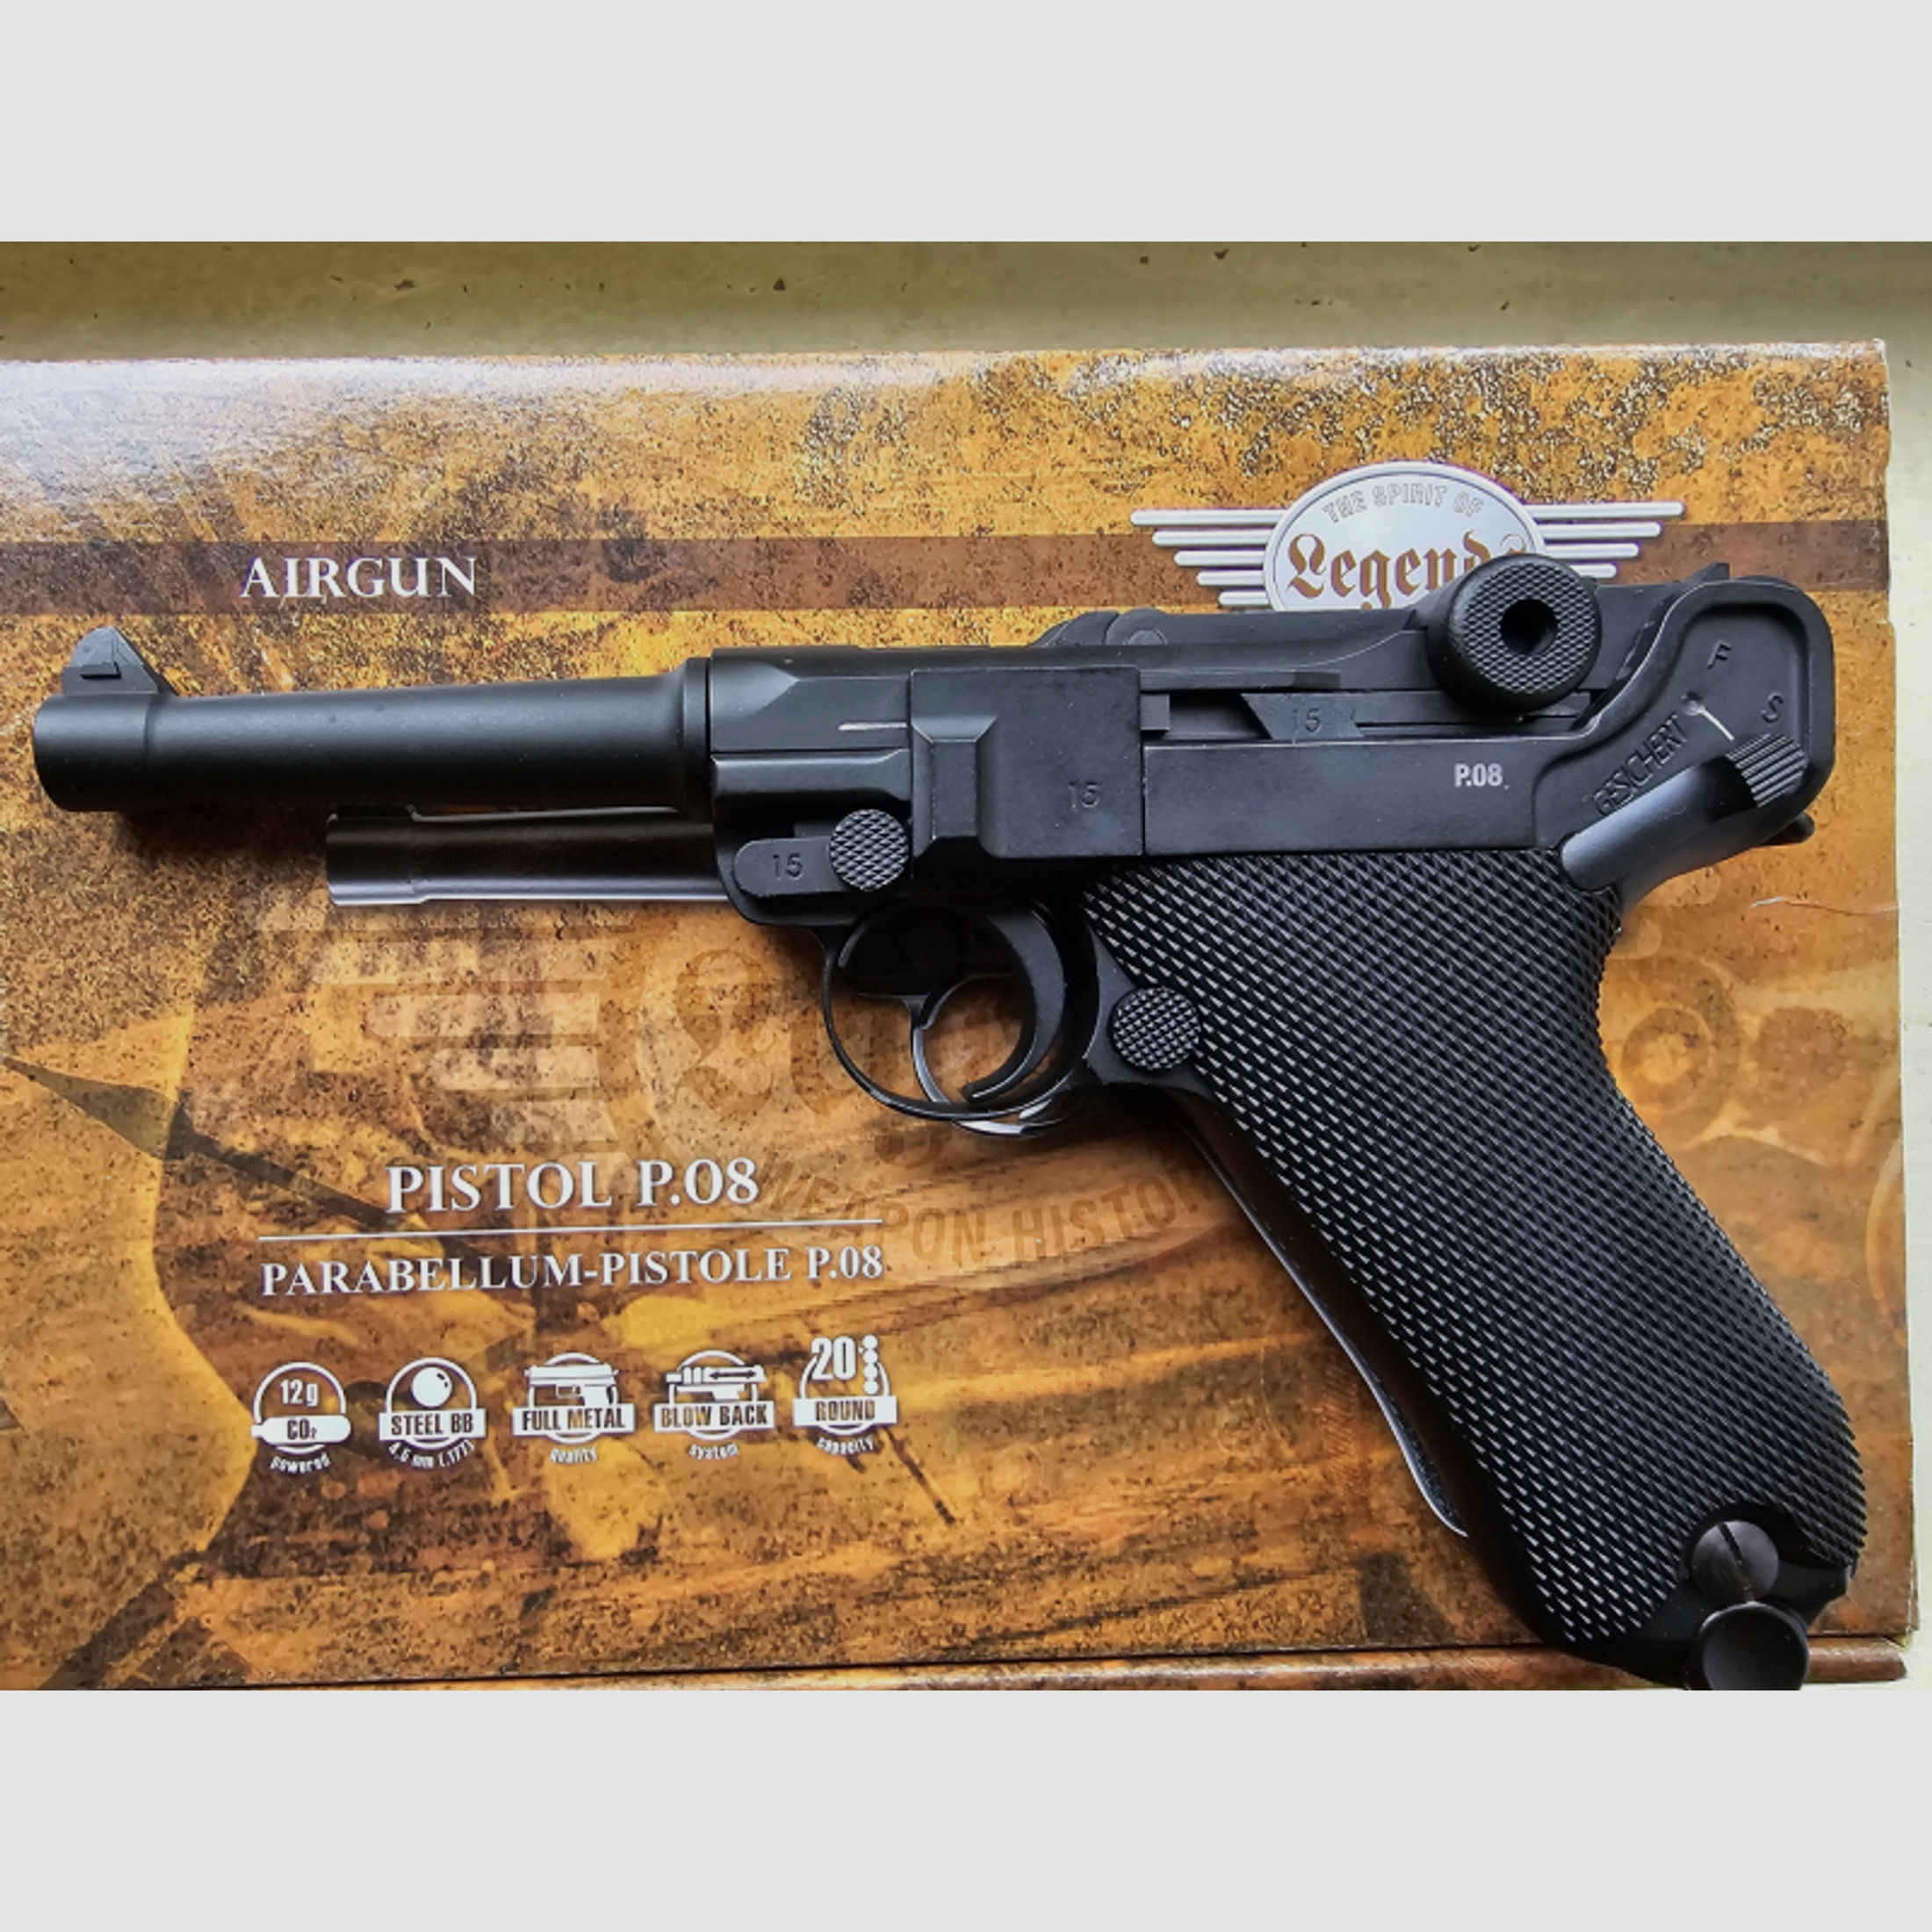 Luftpistolenset Umarex Legends Pistole P08 - 4,5 mm Stahl BB Co2-Pistole in Metallausführung